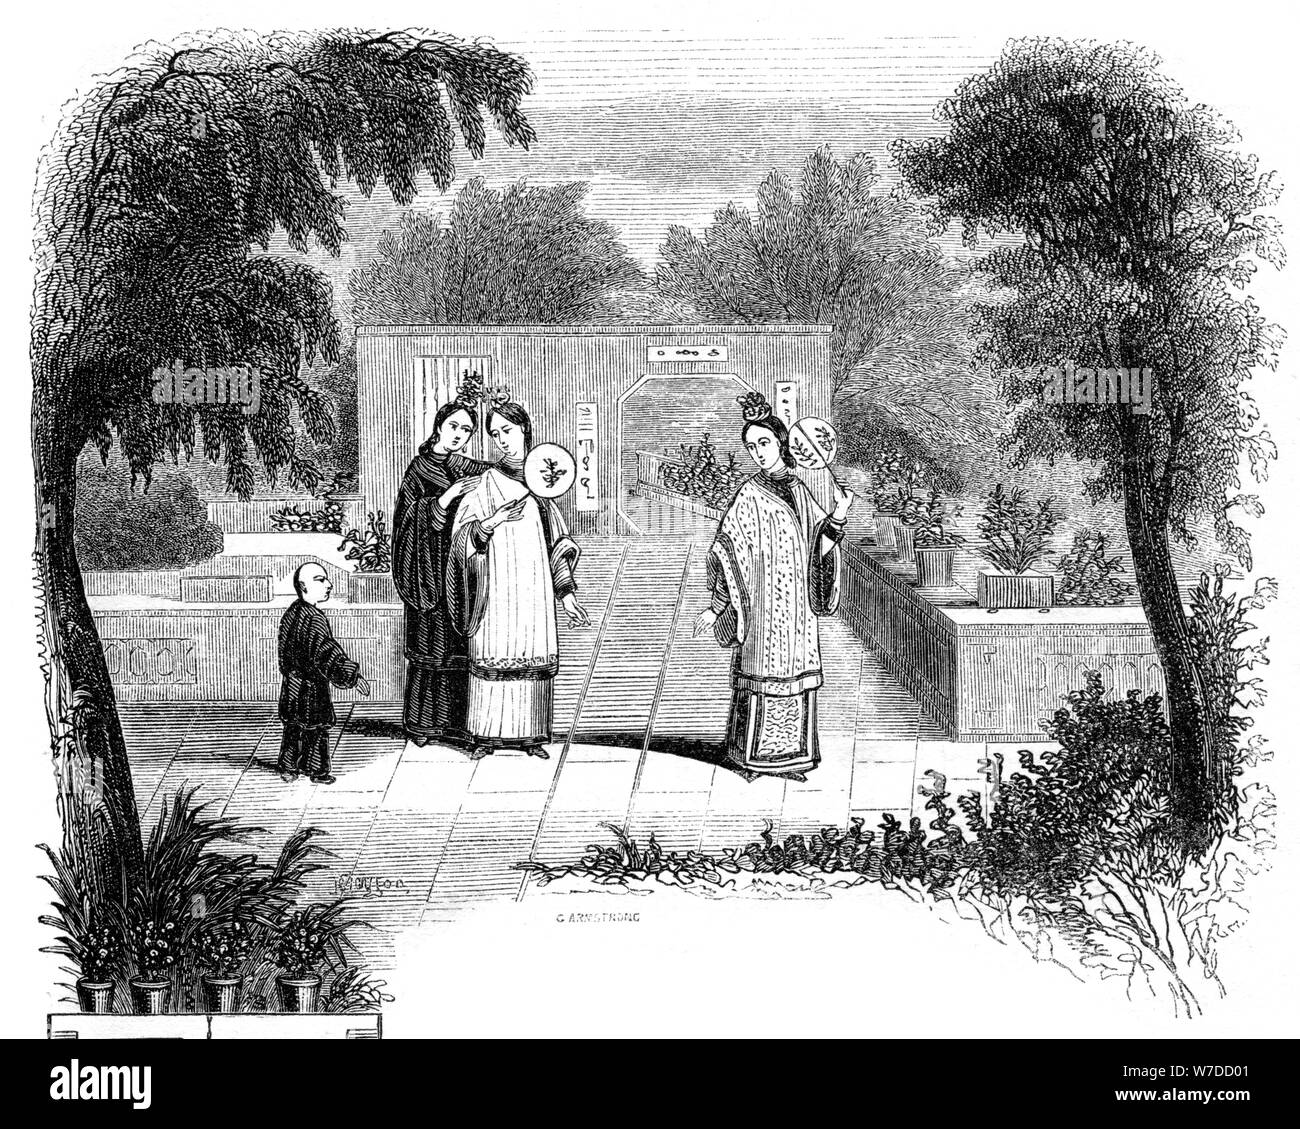 "Signore camminando, giardino scene di una delle classi ricche', 1847. Artista: Armstrong Foto Stock